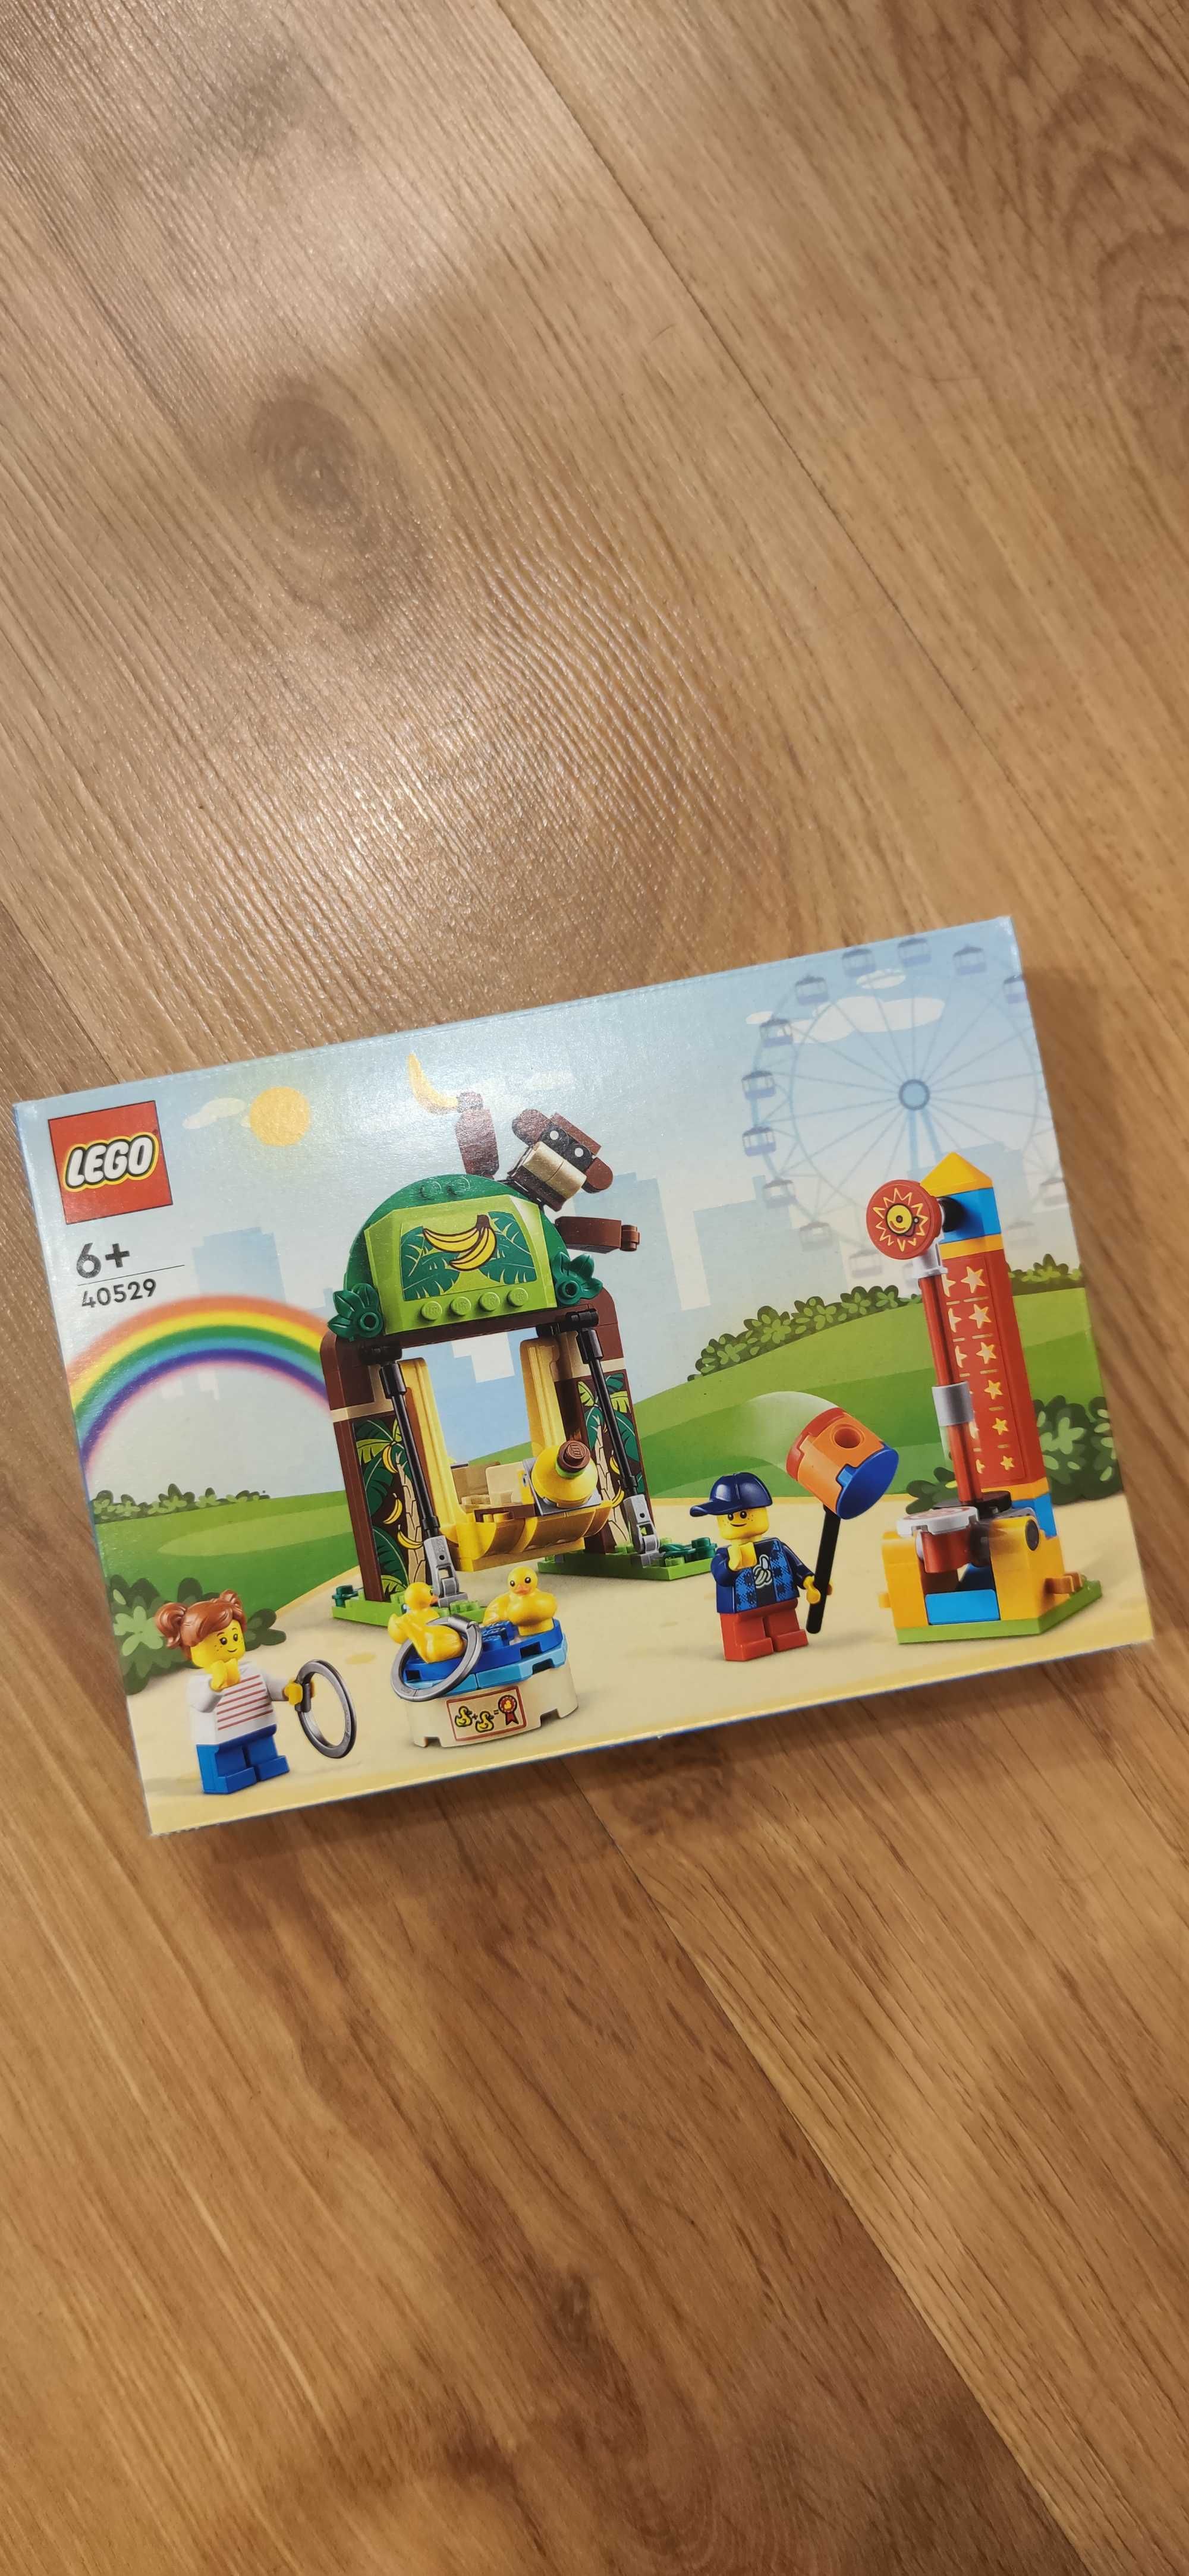 LEGO Park rozrywki dla dzieci 40529